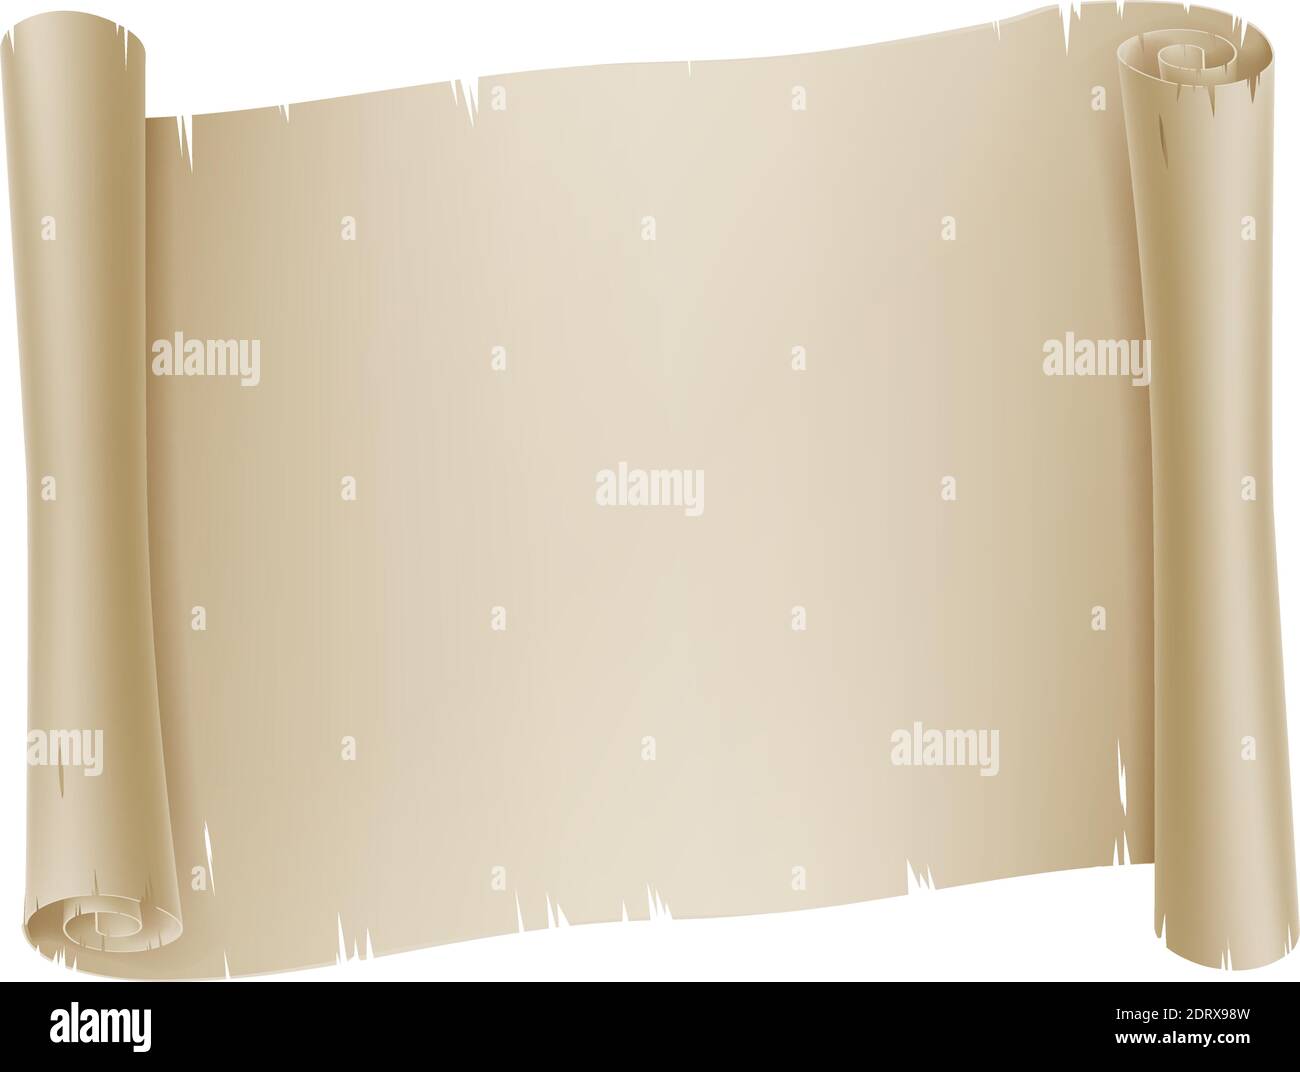 Papier rouleau de défilement papier papier papier papier parchemin arrière-plan Illustration de Vecteur